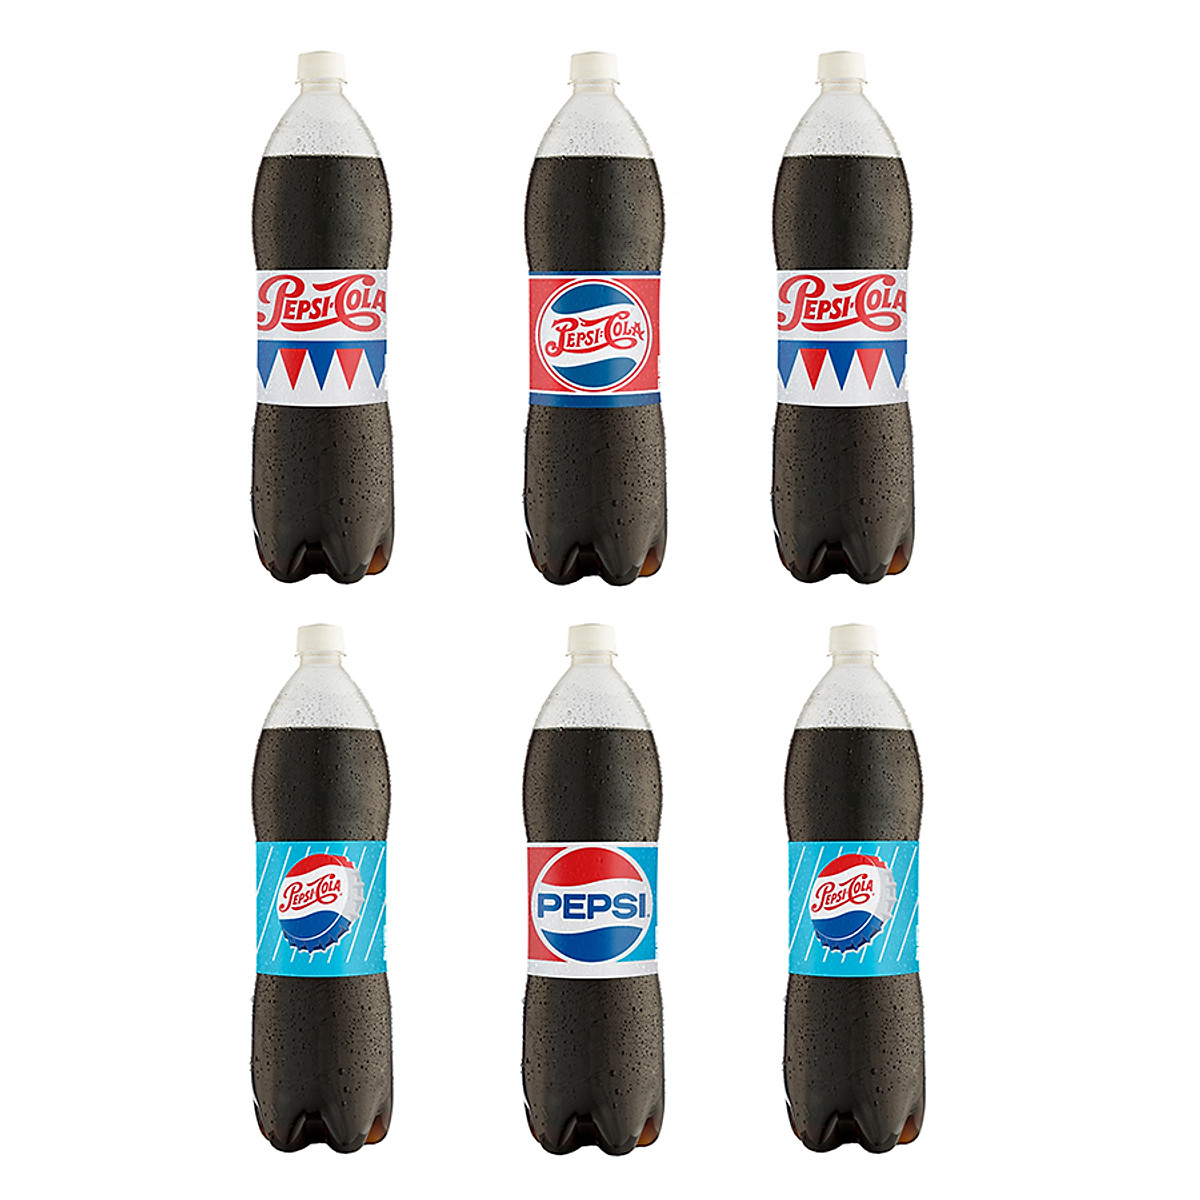 Lóc 6 Chai Nước Ngọt Pepsi 1.5L